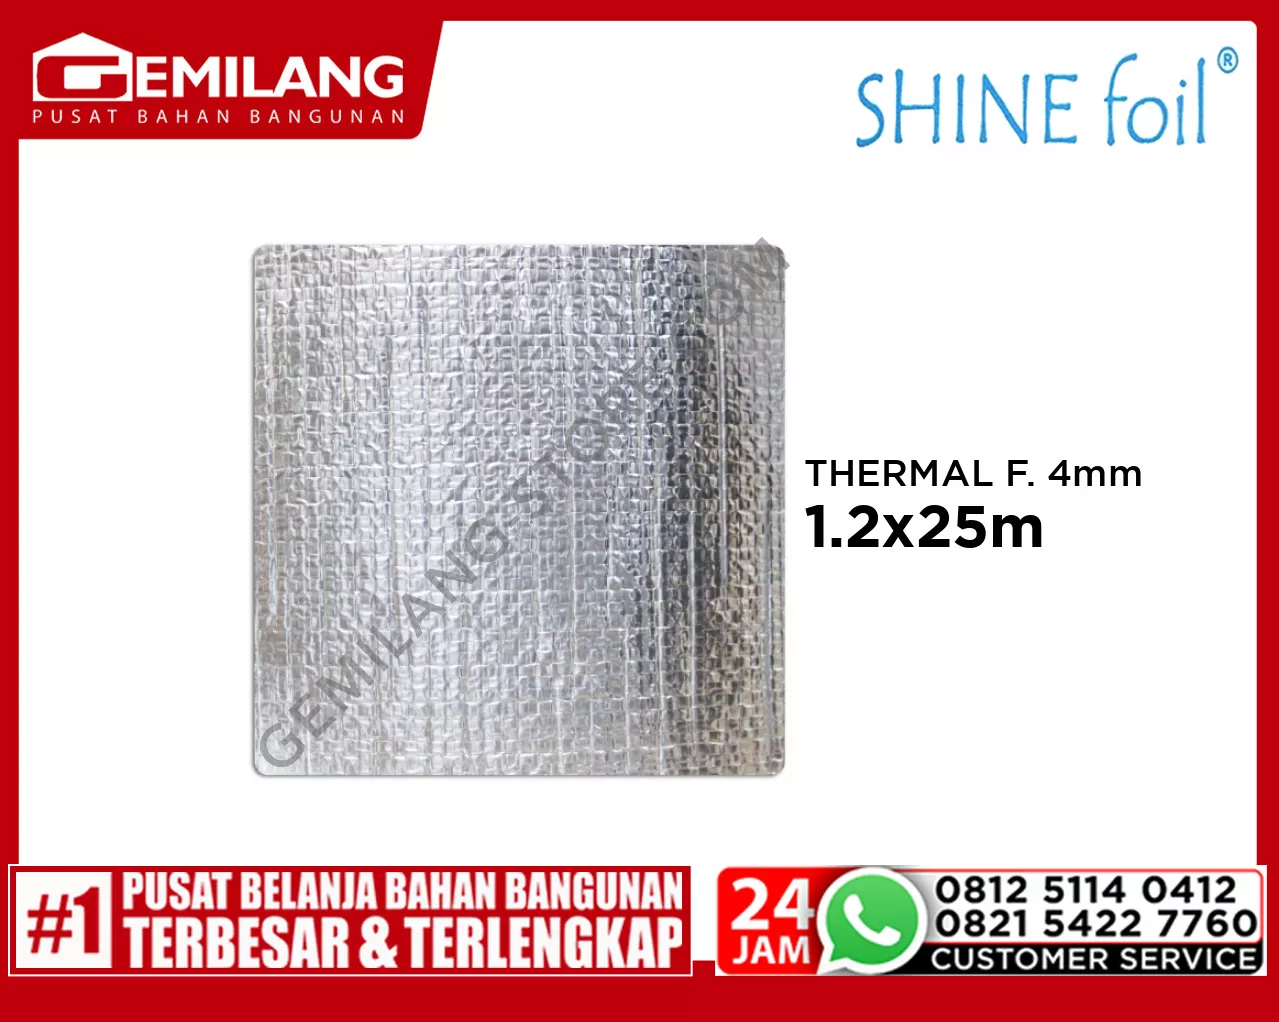 SHINE FOIL THERMAL FOAM 4mm 1.2x25m